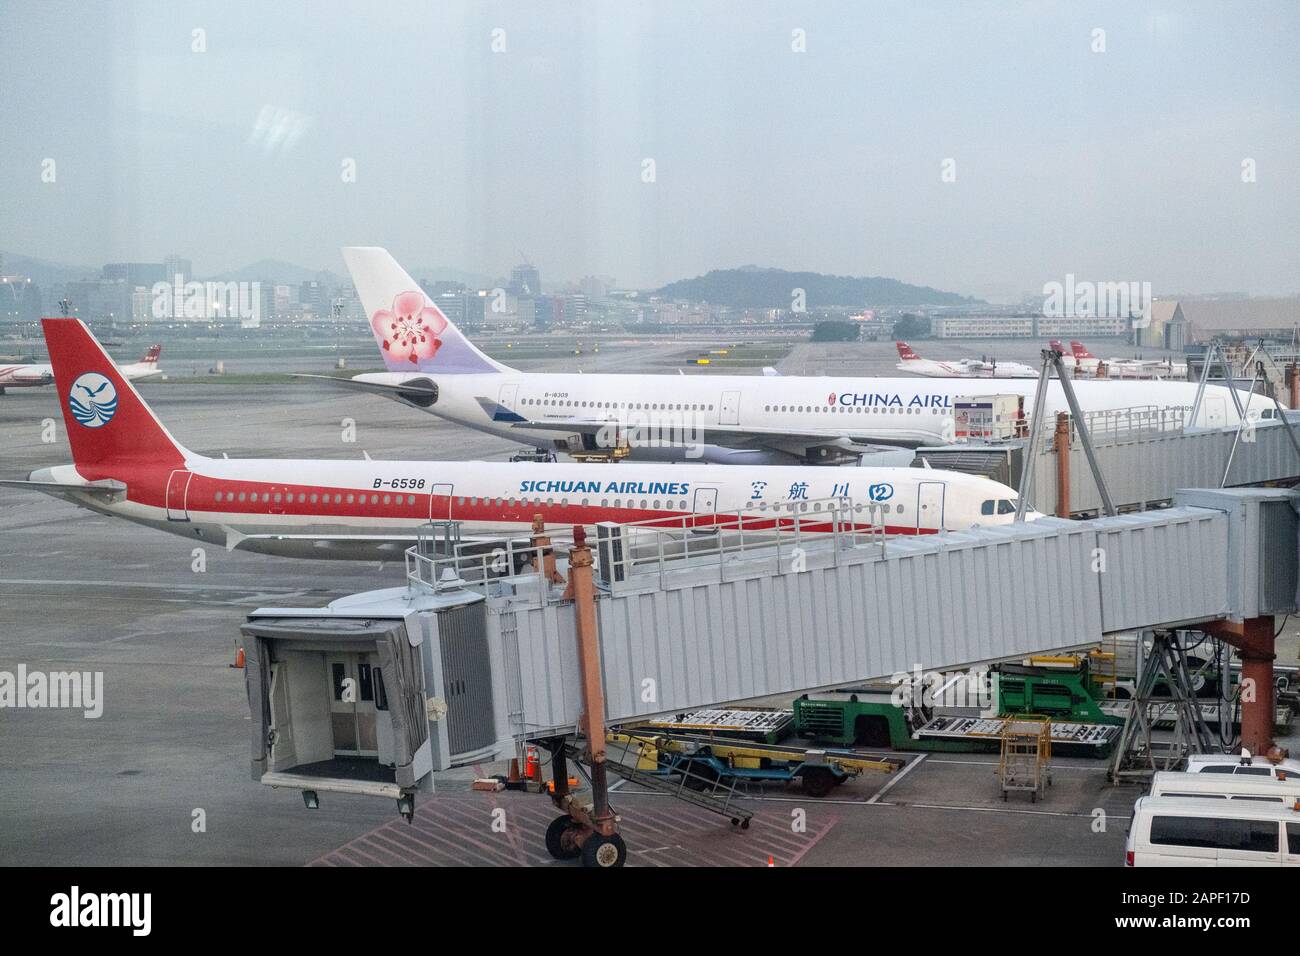 Airbus A330-300 di China Eastern Airlines e Airbus A321-231 di Sichuan Airlines visto all'aeroporto internazionale di Songshan.i funzionari di Taiwan ordinarono di interrompere l'invio e la ricezione di gruppi di turisti da/per Wuhan, Cina, sull'epidemia di coronavirus. I permessi di ingresso per 459 visitatori dalla città cinese di Wuhan sono stati annullati dall'Agenzia Nazionale per l'immigrazione (NIA) il mercoledì (gennaio. 22). I gruppi avevano in programma di arrivare a Taiwan entro la fine di gennaio. Foto Stock